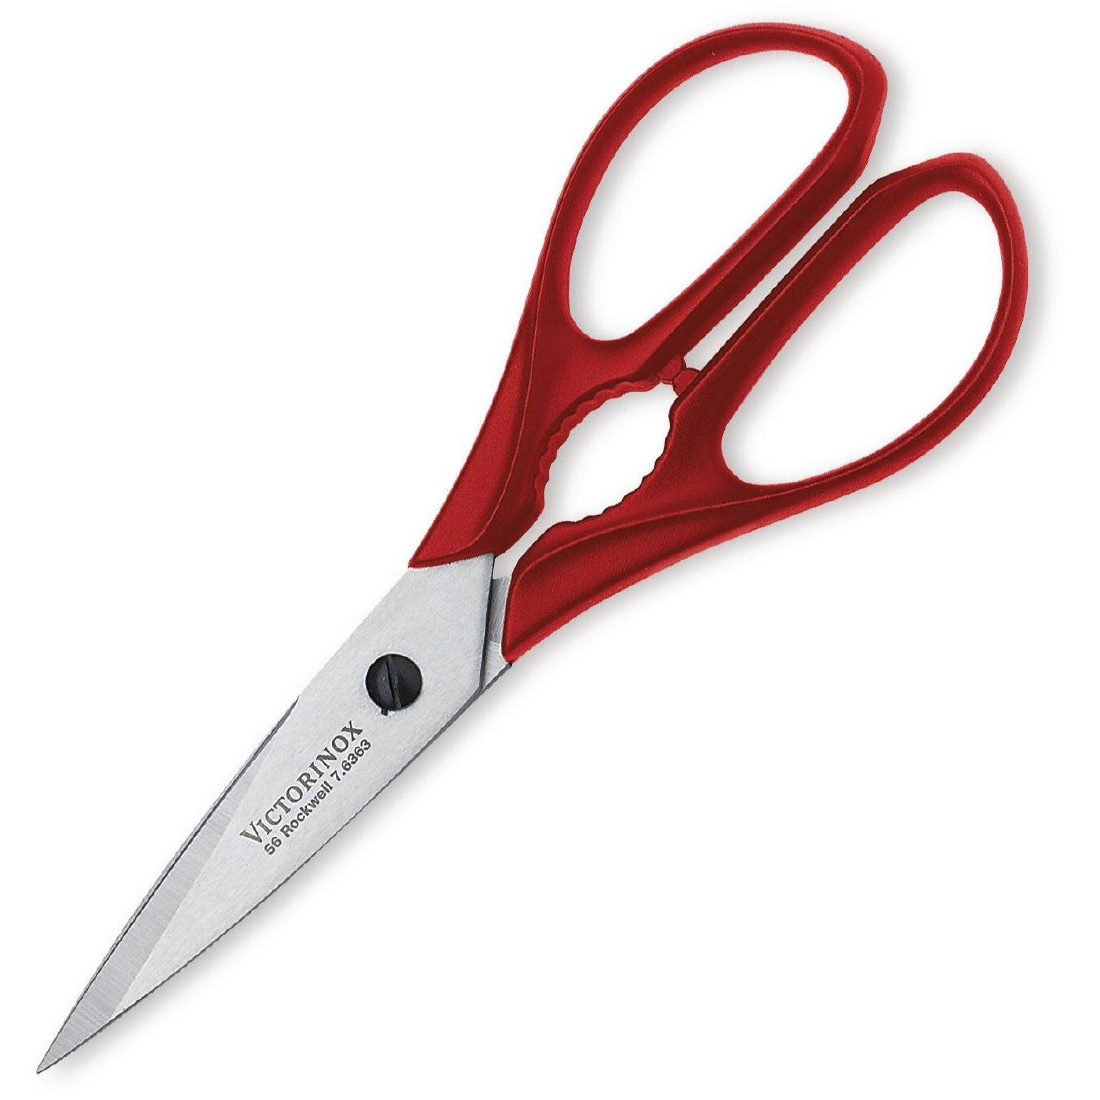 Victorinox Scissors with Red Nylon Handles